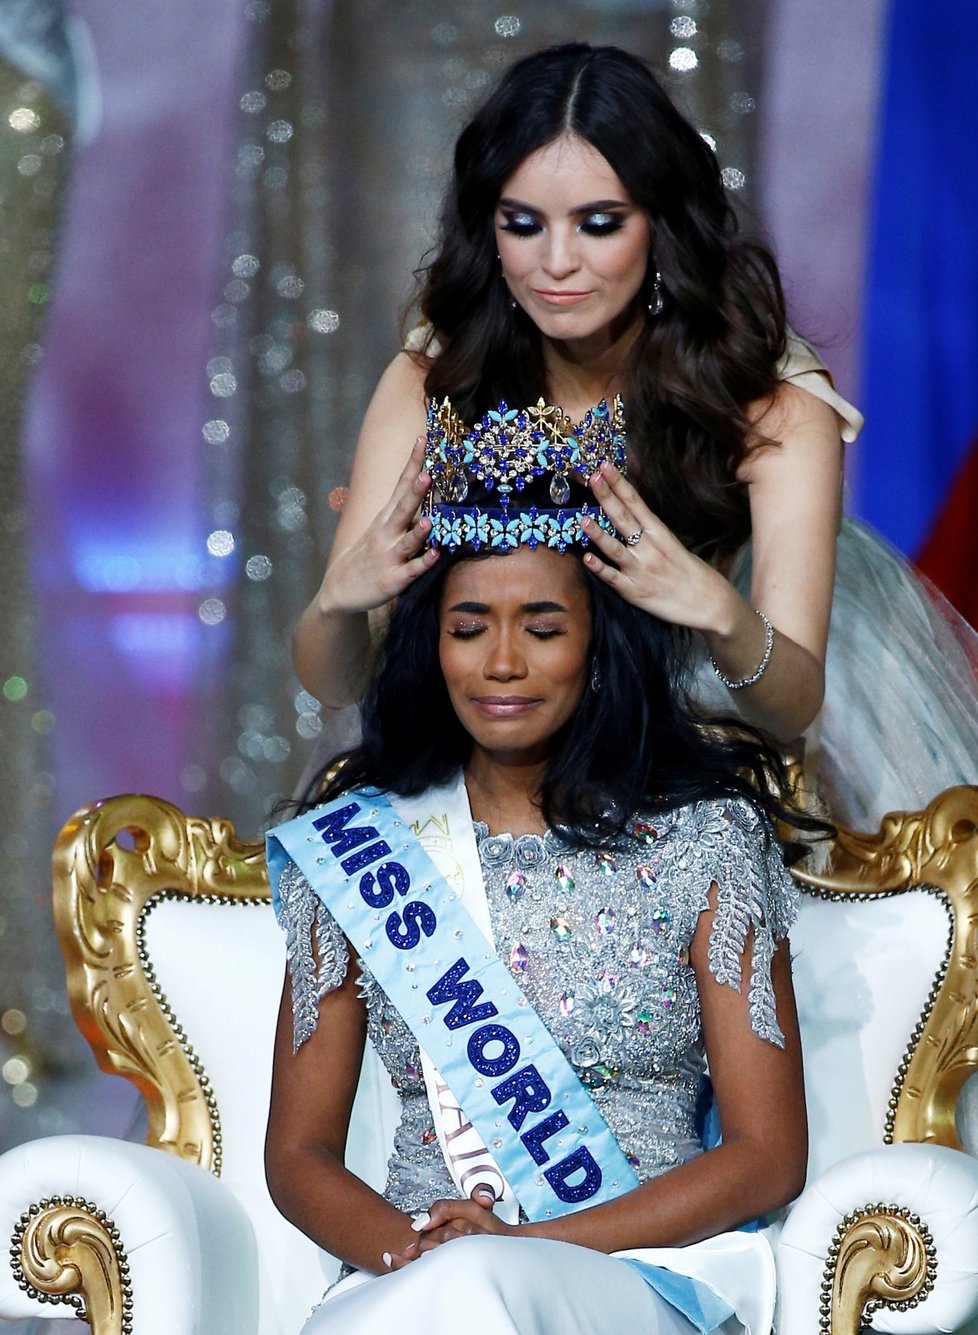 Vítězka Miss World Toni-Ann Singh z Jamajky (14. 12. 2019)